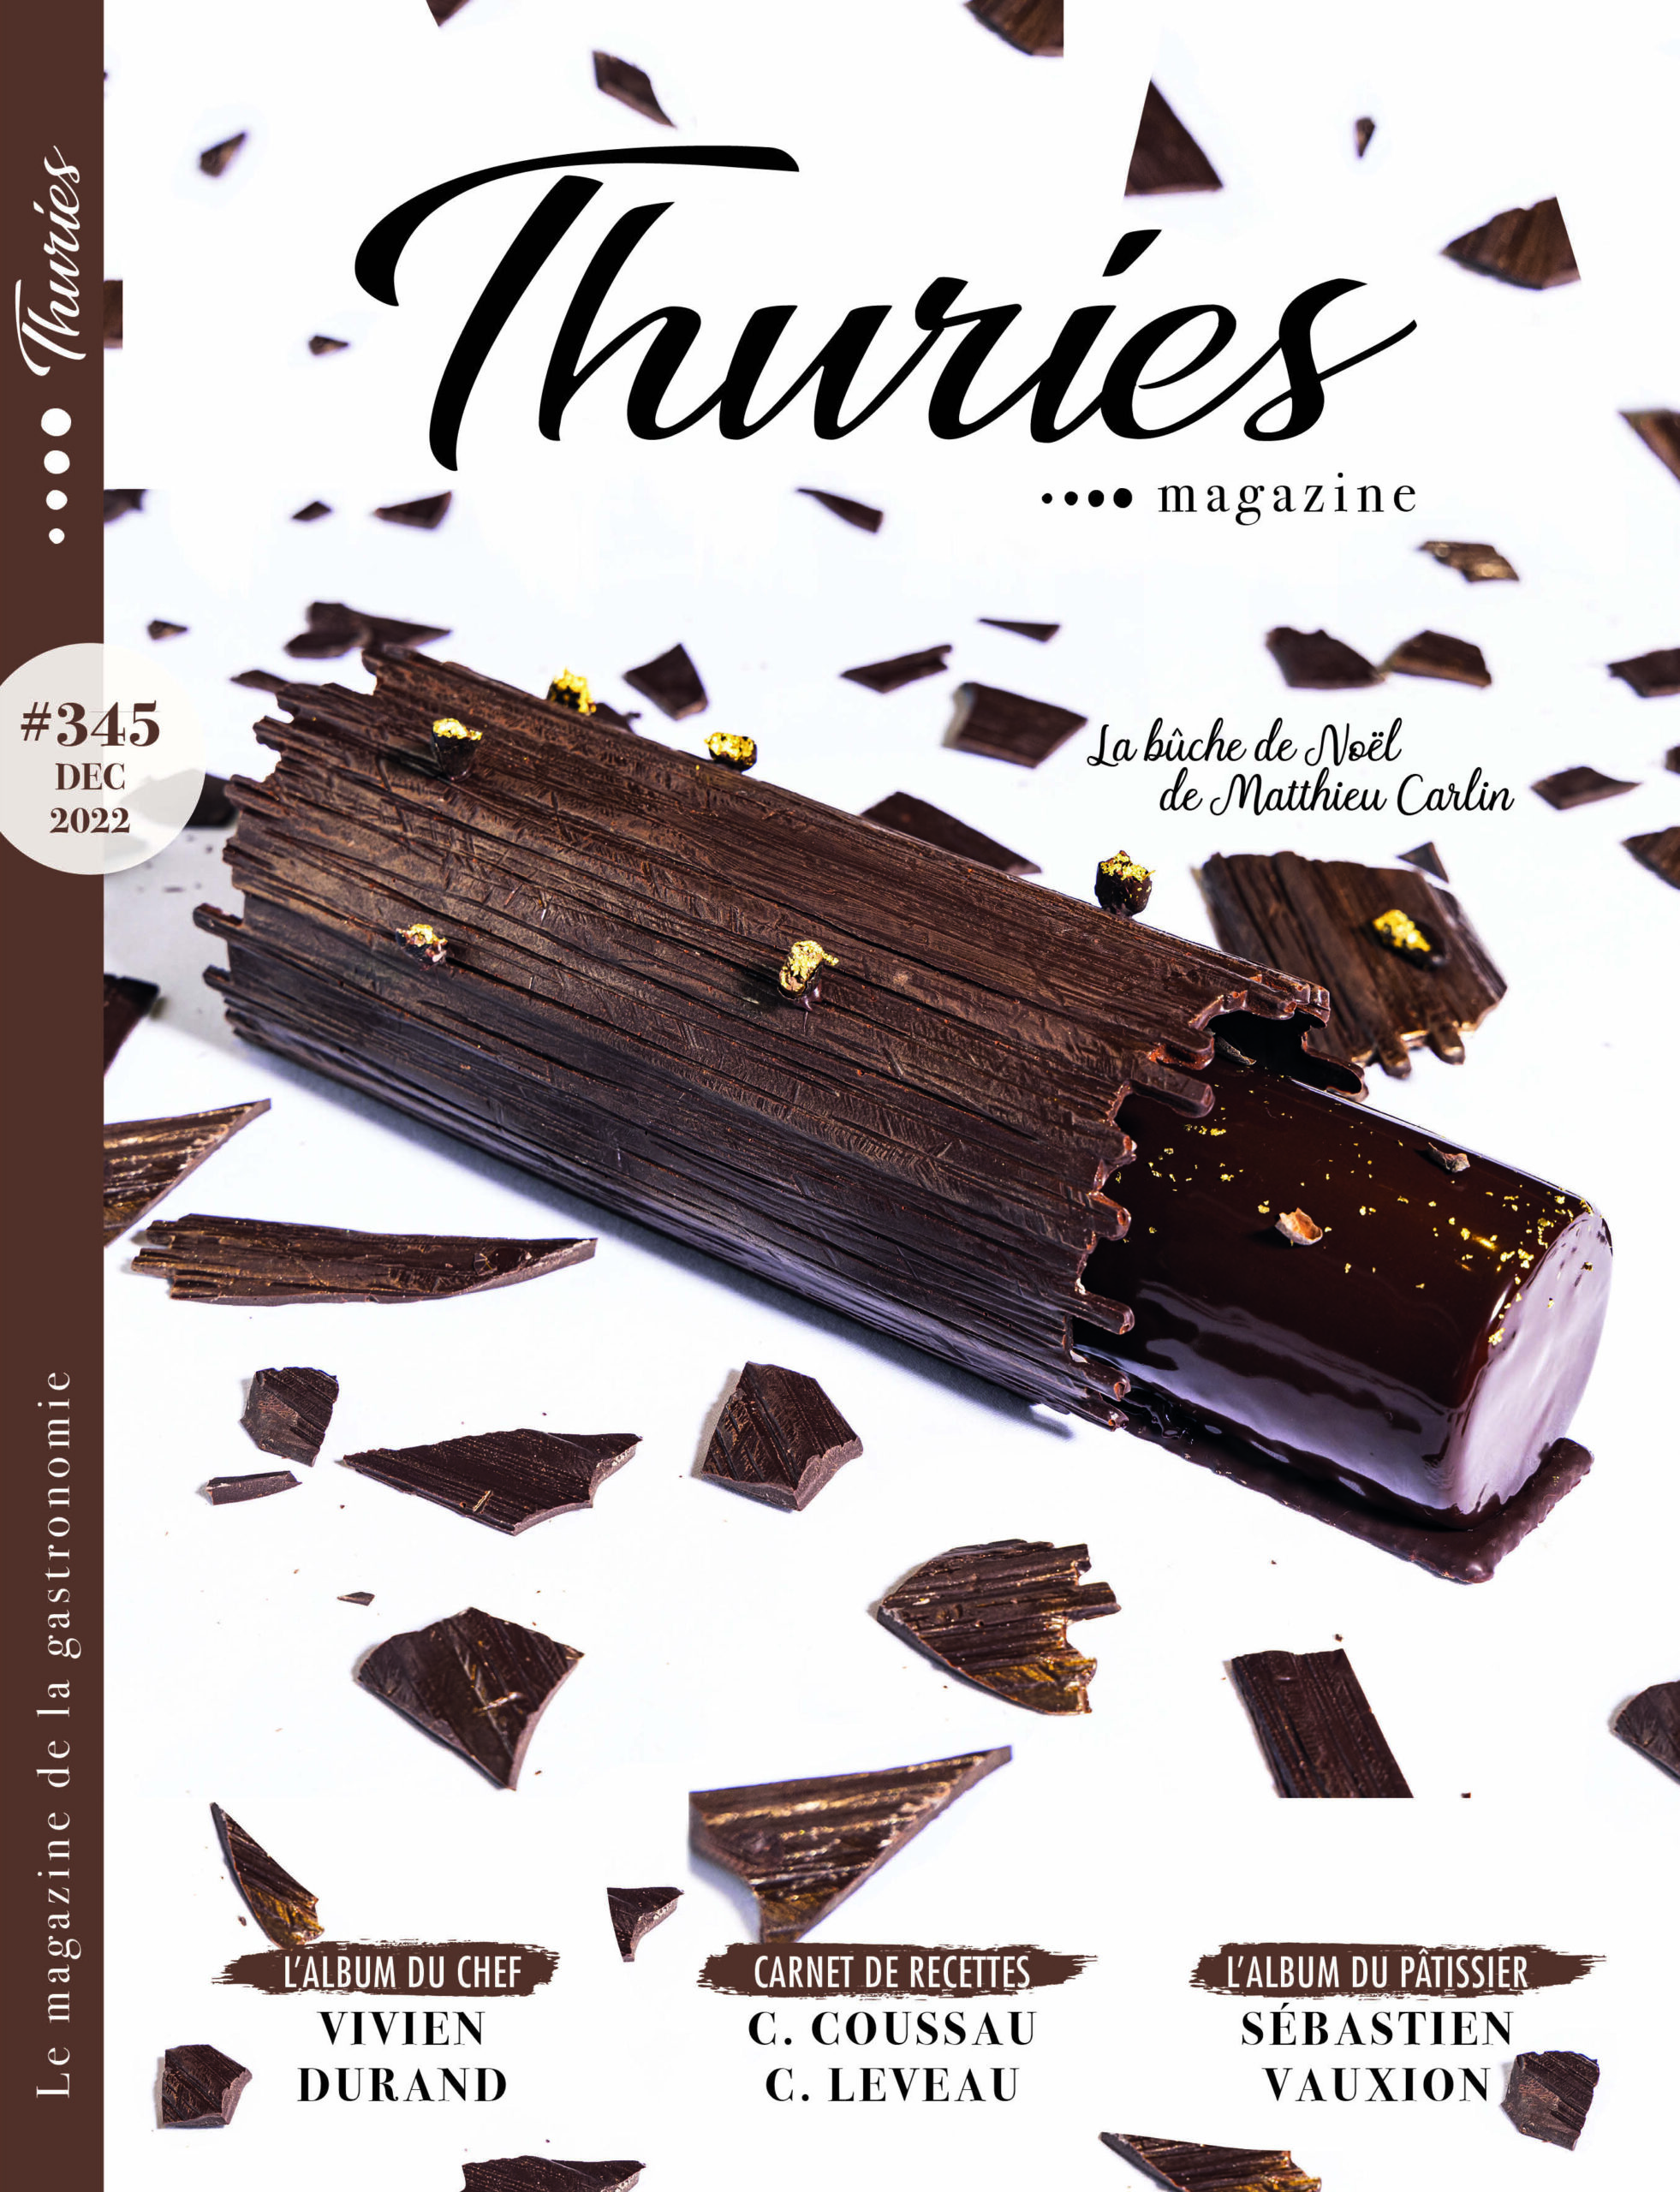 Trop heureux de signer la couverture de ce beau Magazine avec la belle Buche du chef Matthieu Carlin, chef Pâtissier du Crillon. MERCI Anne Luzin et Michel Tanguy pour votre confiance.